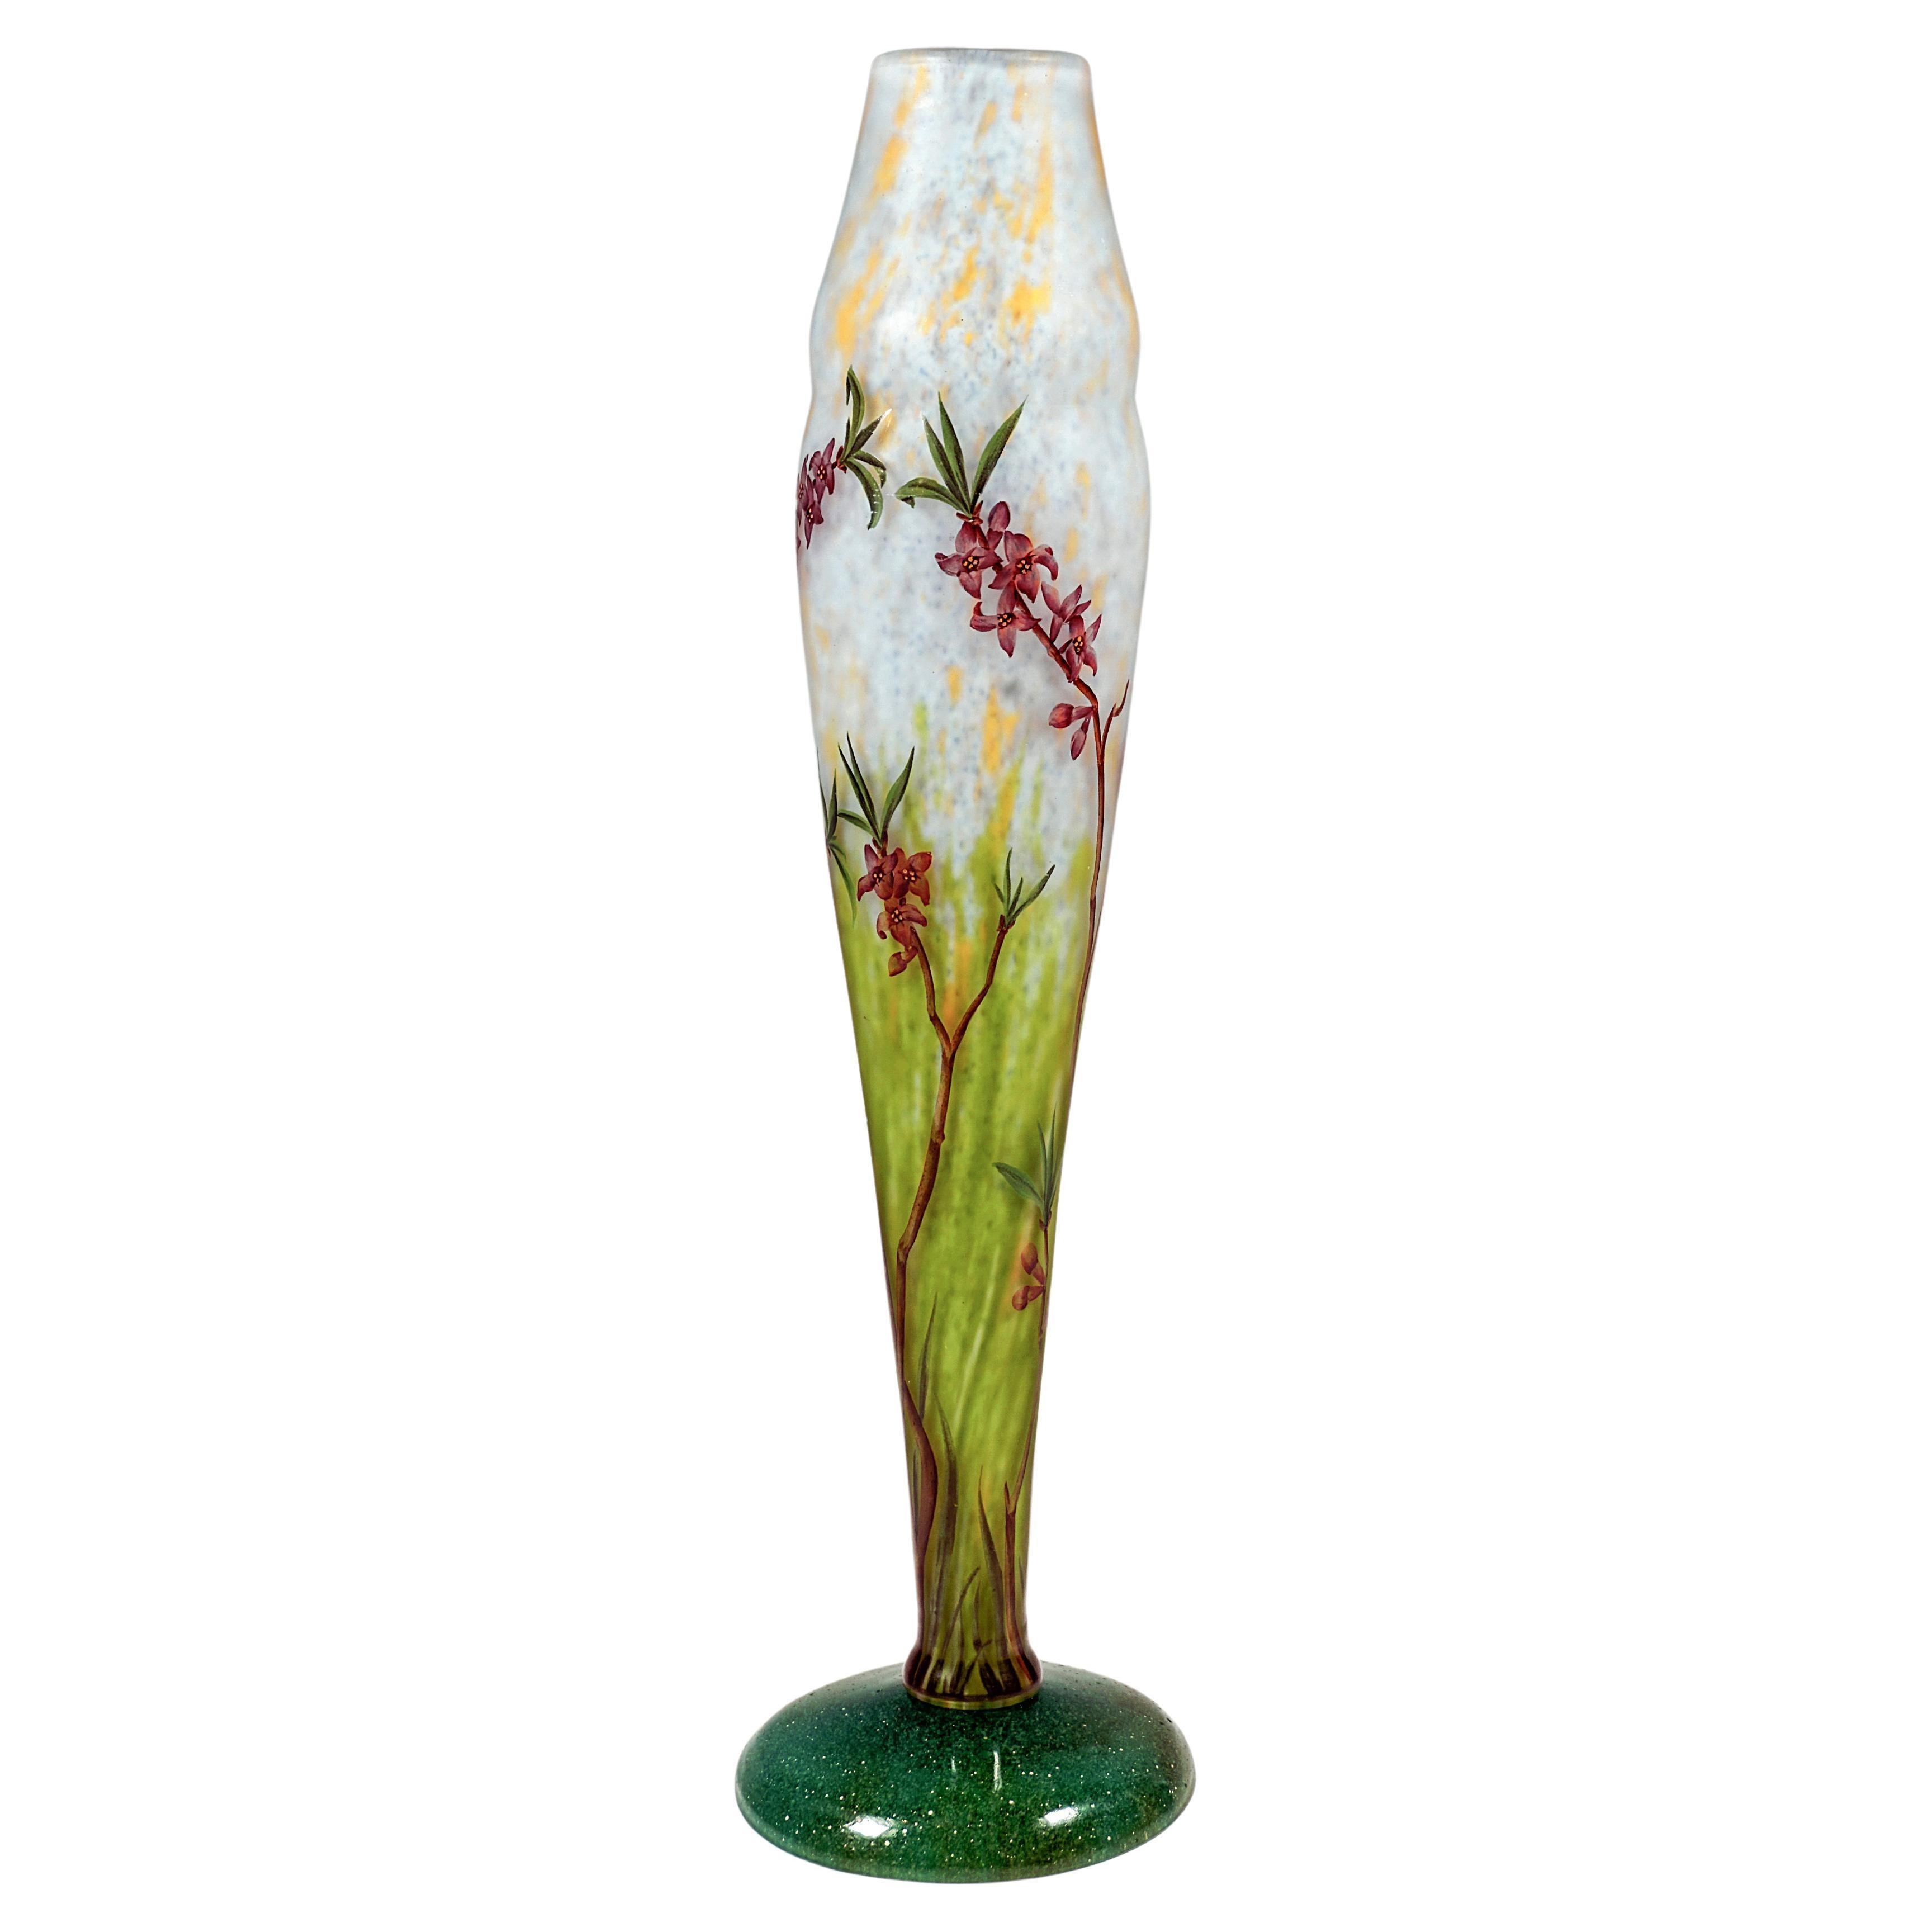 Art Nouveau Vase with Delicate Flower Branches Decor, Daum Nancy, France, c 1910 For Sale